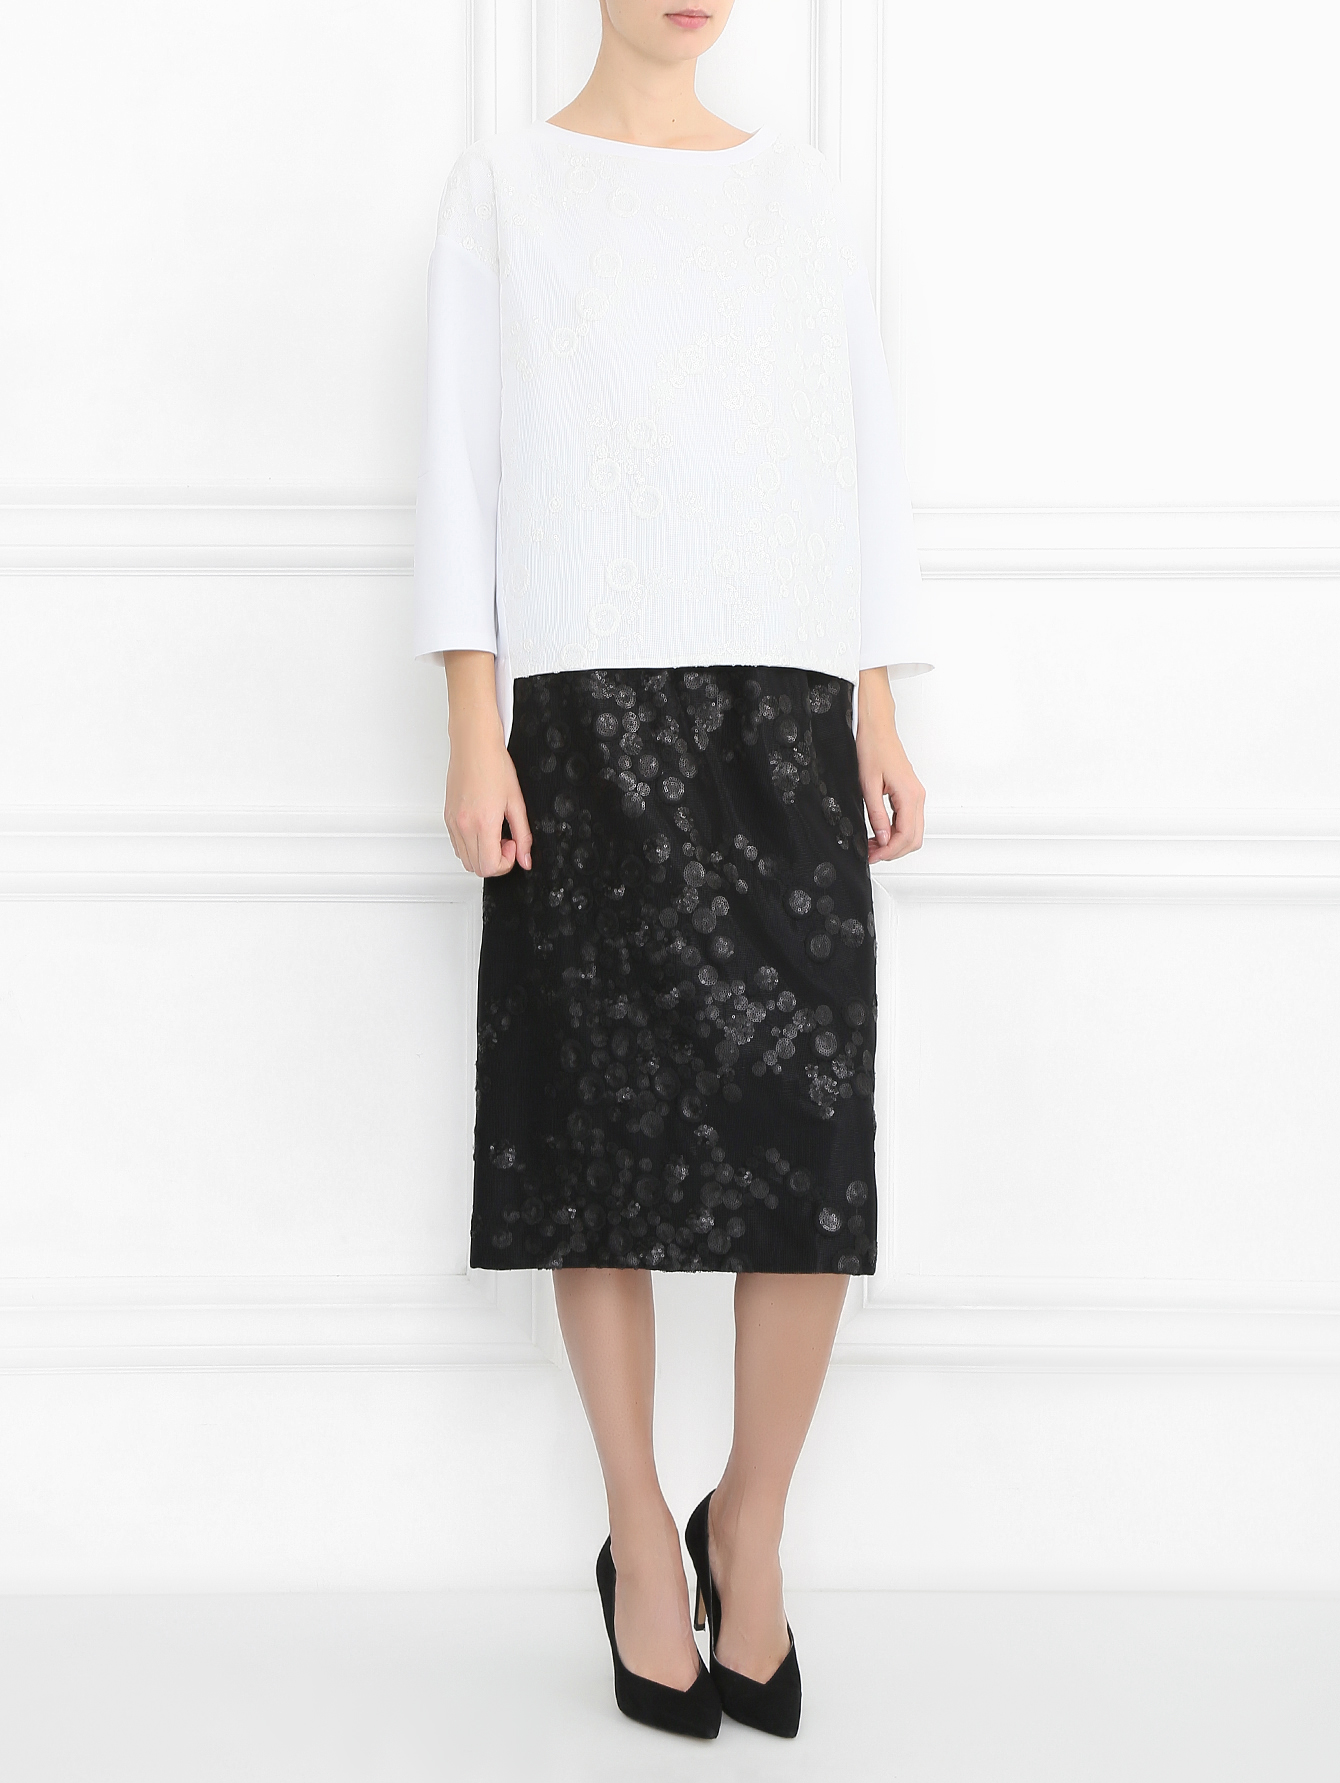 Кружевная юбка для зрелых модниц – отличный вариант для прогулок и не только